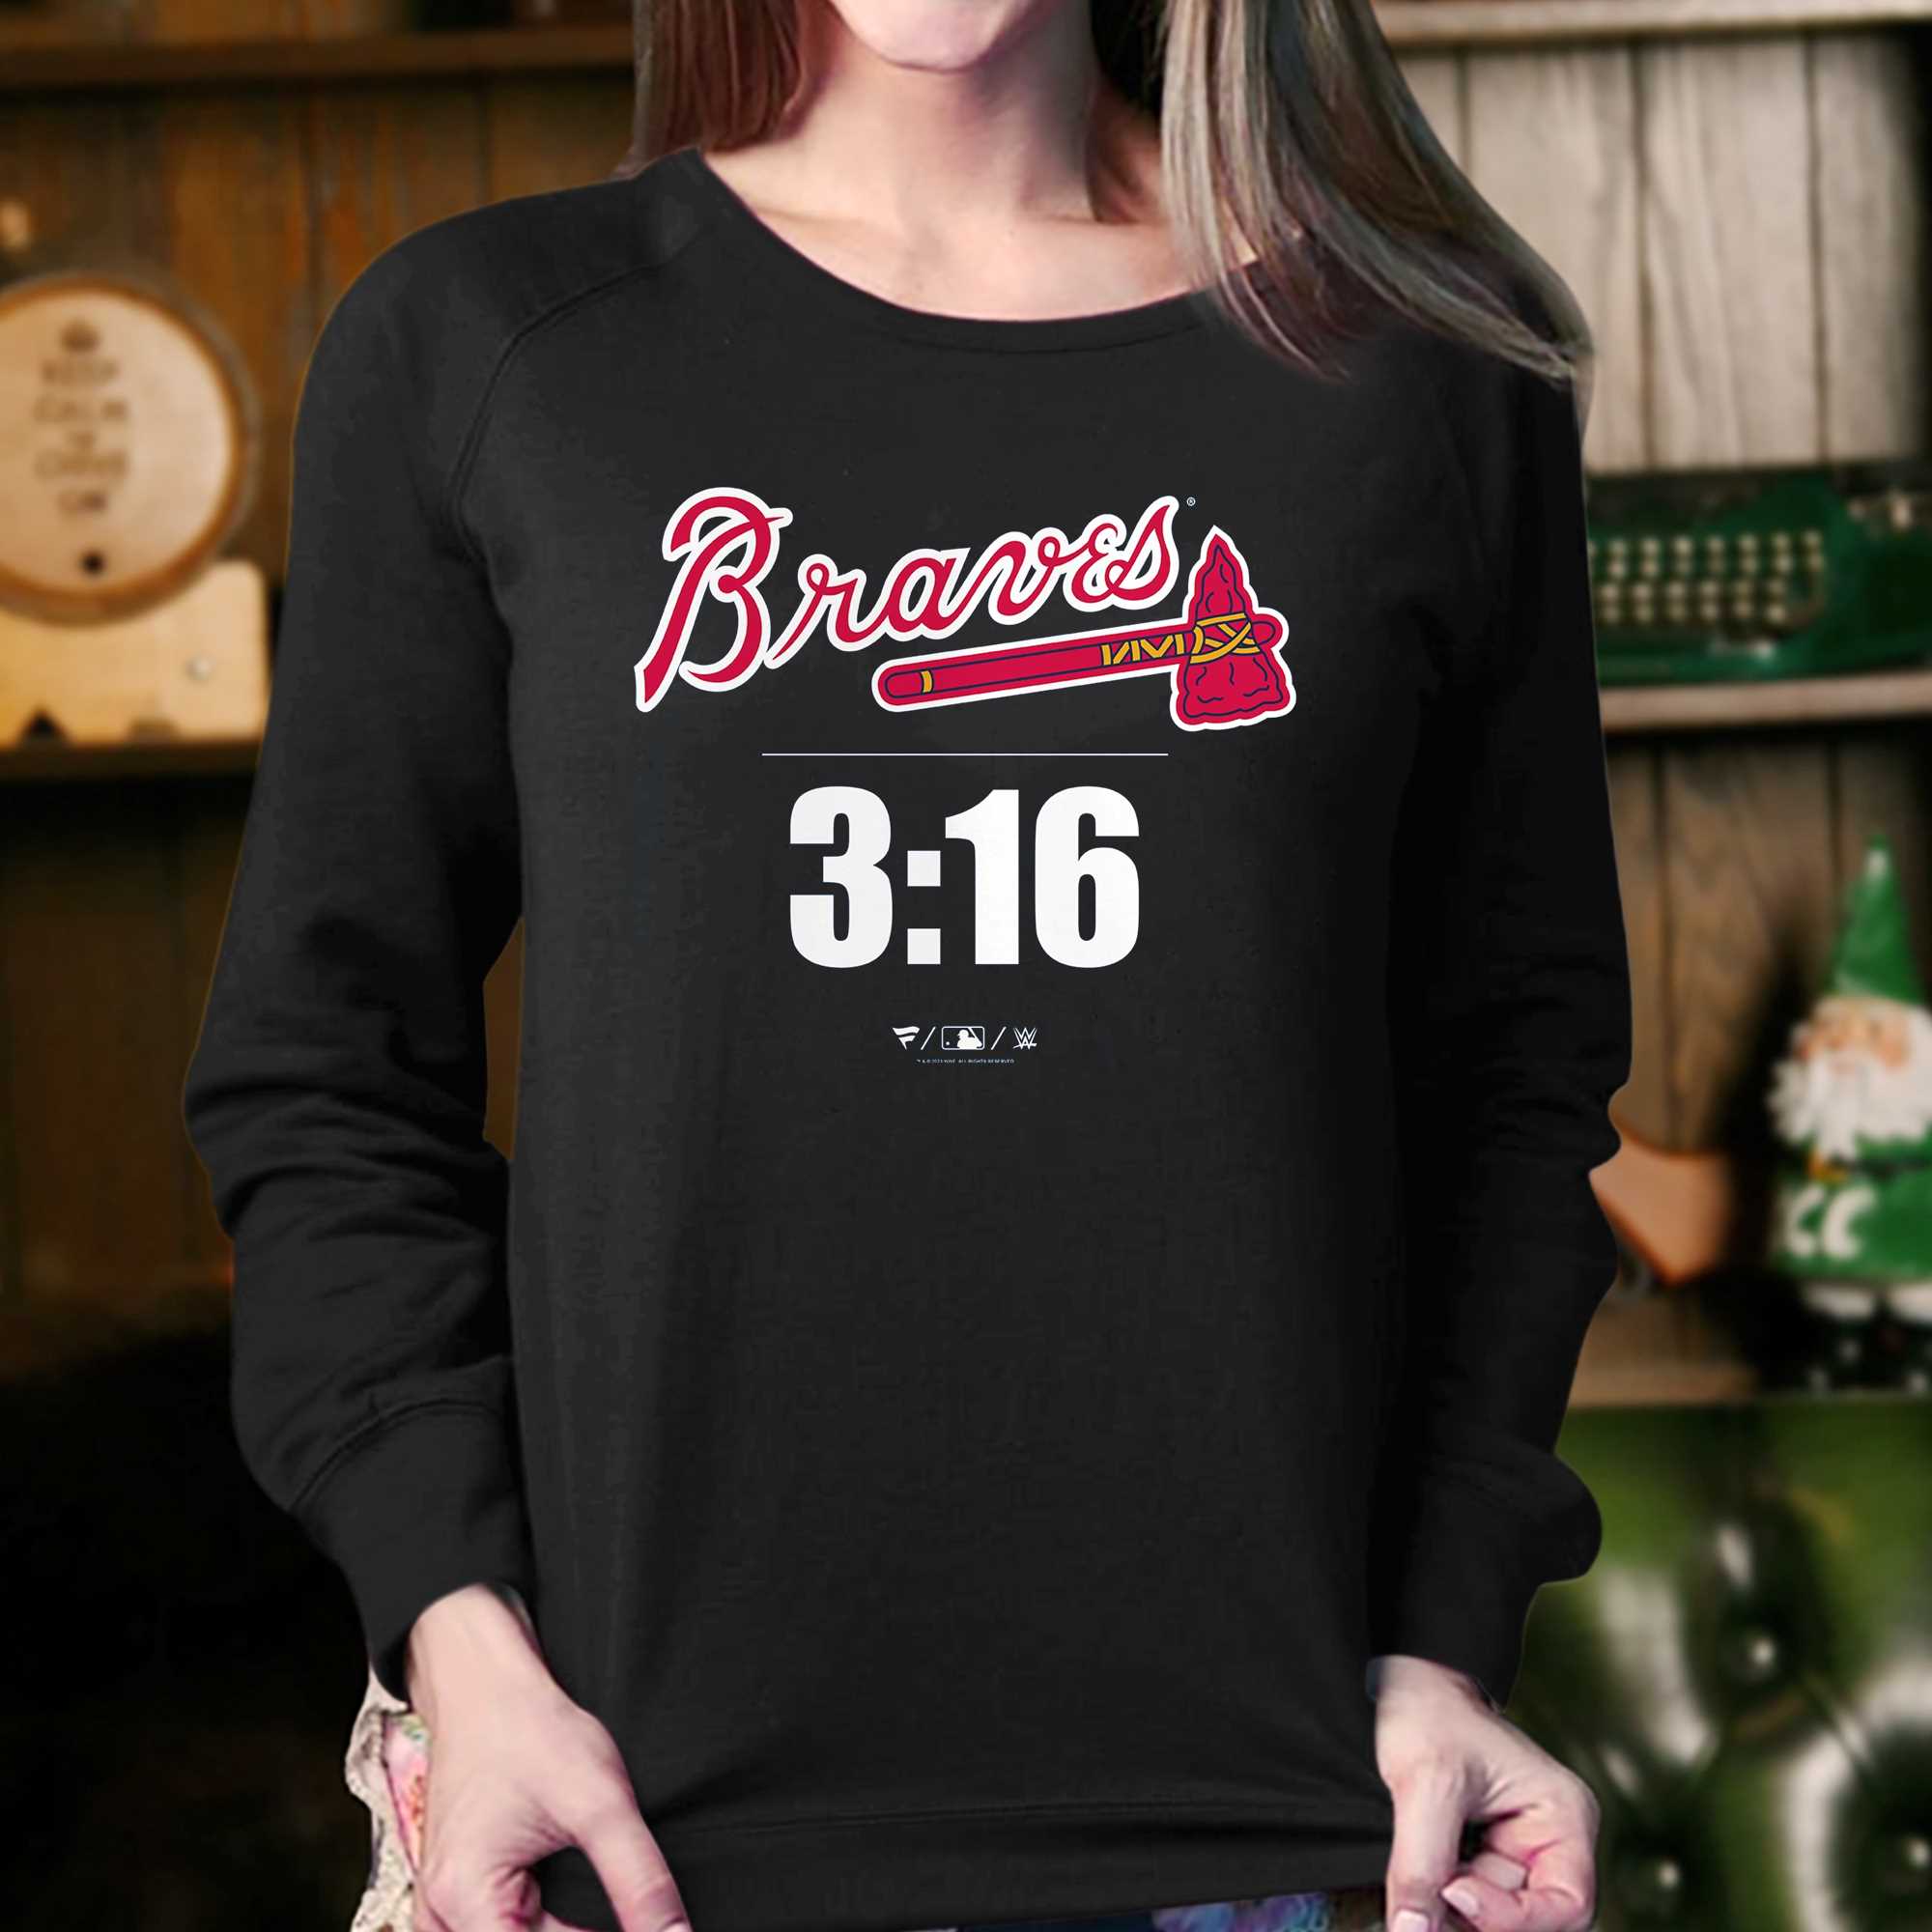 Atlanta Braves Women's Tshirt Braves V-neck T-shirt 